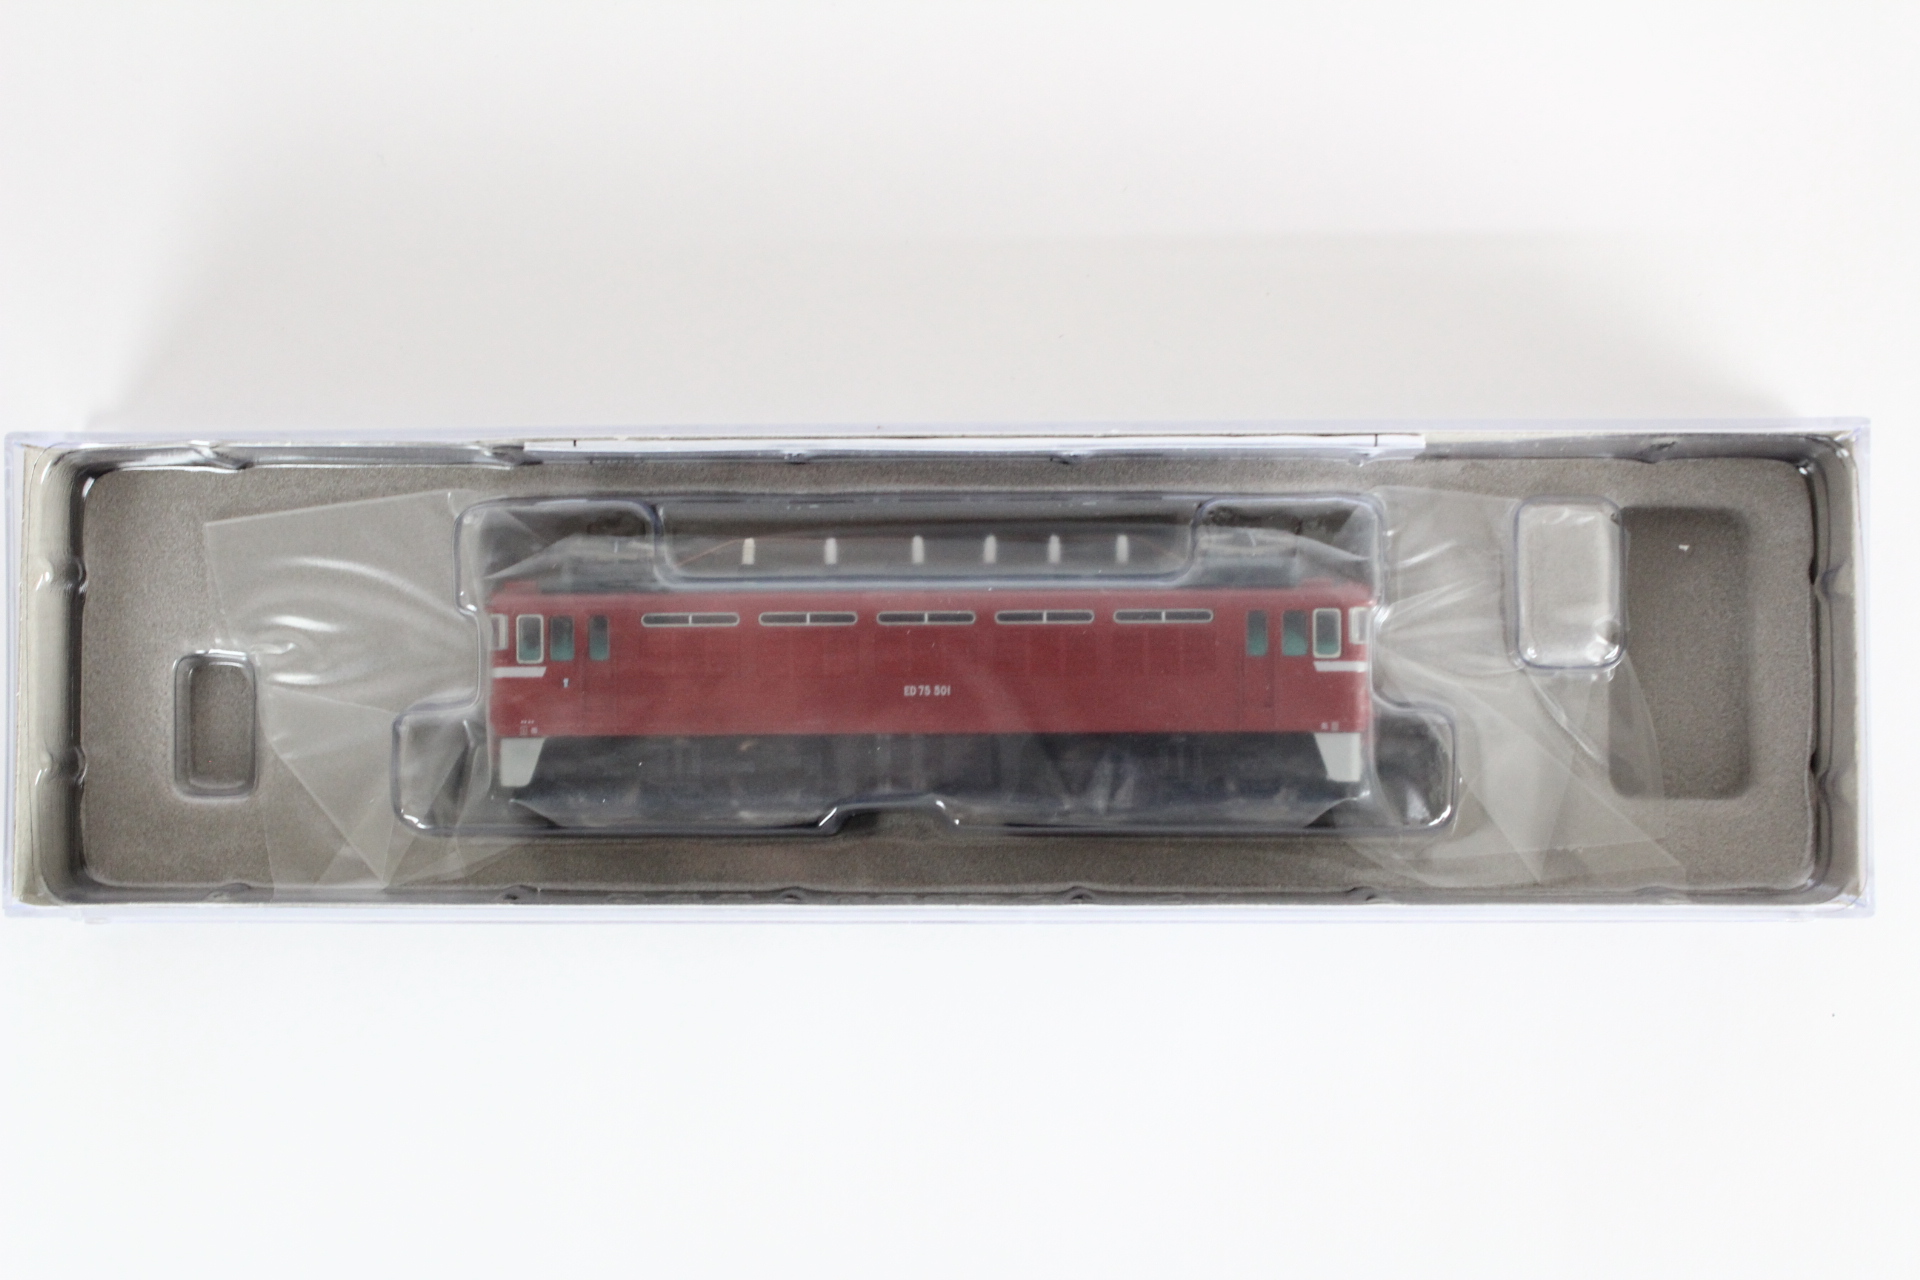 マイクロエース A8121 ED75-501 タイプ・改造後 鉄道模型 Nゲージ 